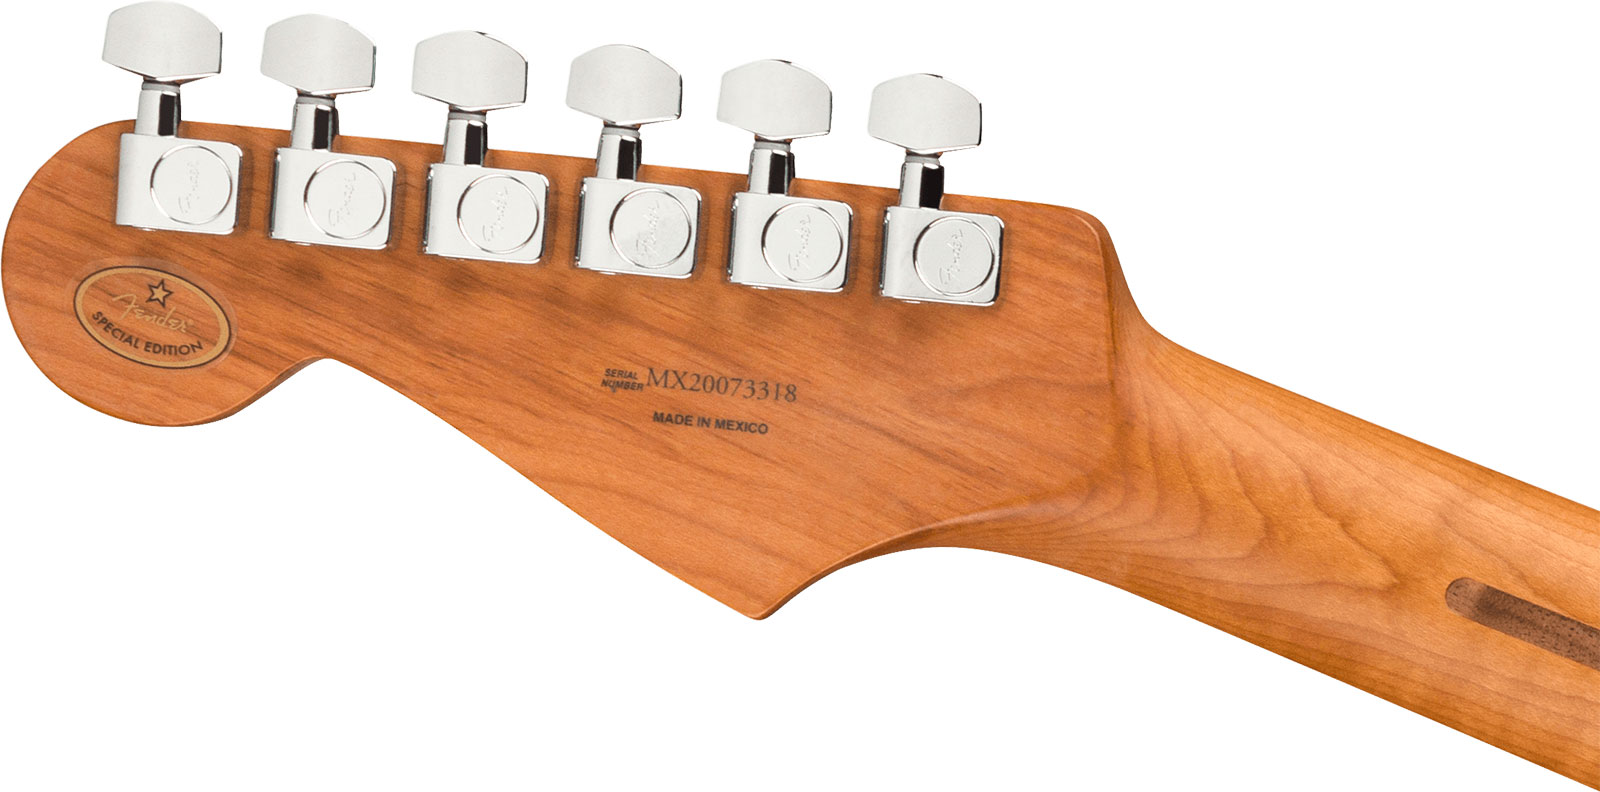 Fender Strat Player Roasted Maple Neck Ltd Mex 3s Trem Mn - 3 Color Sunburst - Str shape electric guitar - Variation 3